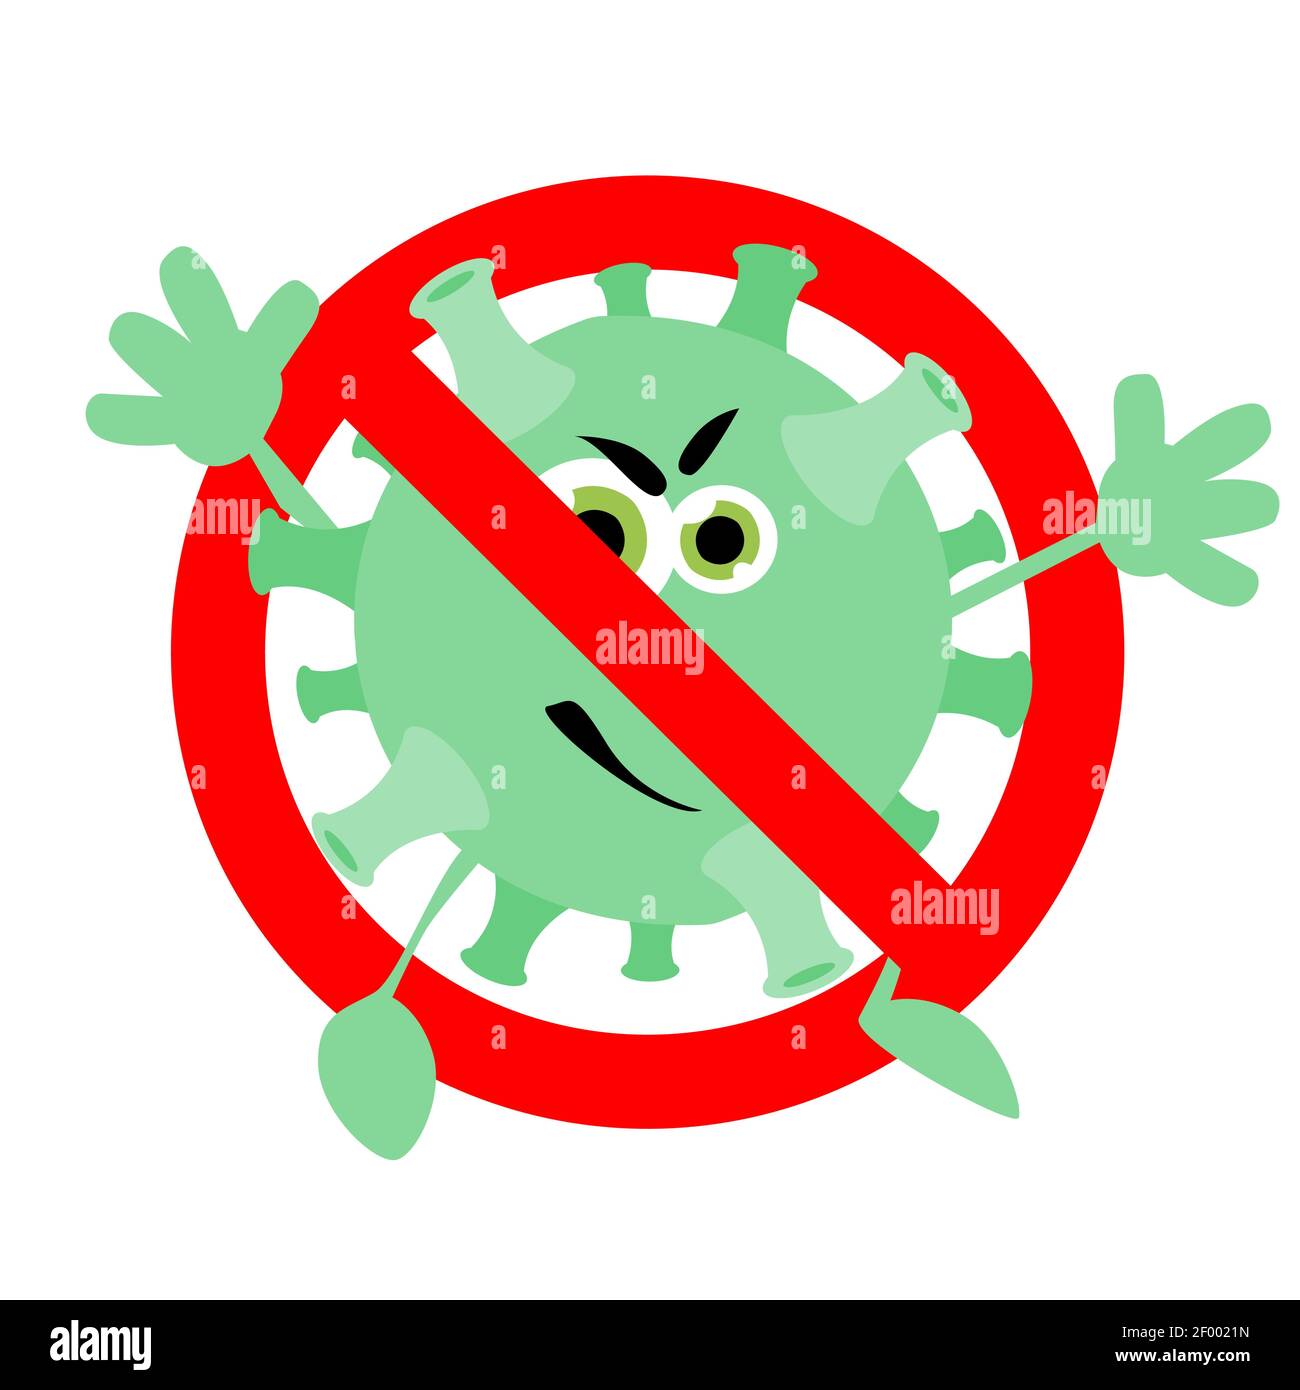 Interdiction caractère coronavirus, pas de bannière infectée, interdiction de la maladie microbe avec les yeux, avertissement covid-19 et pneumonie, illustration vectorielle Illustration de Vecteur